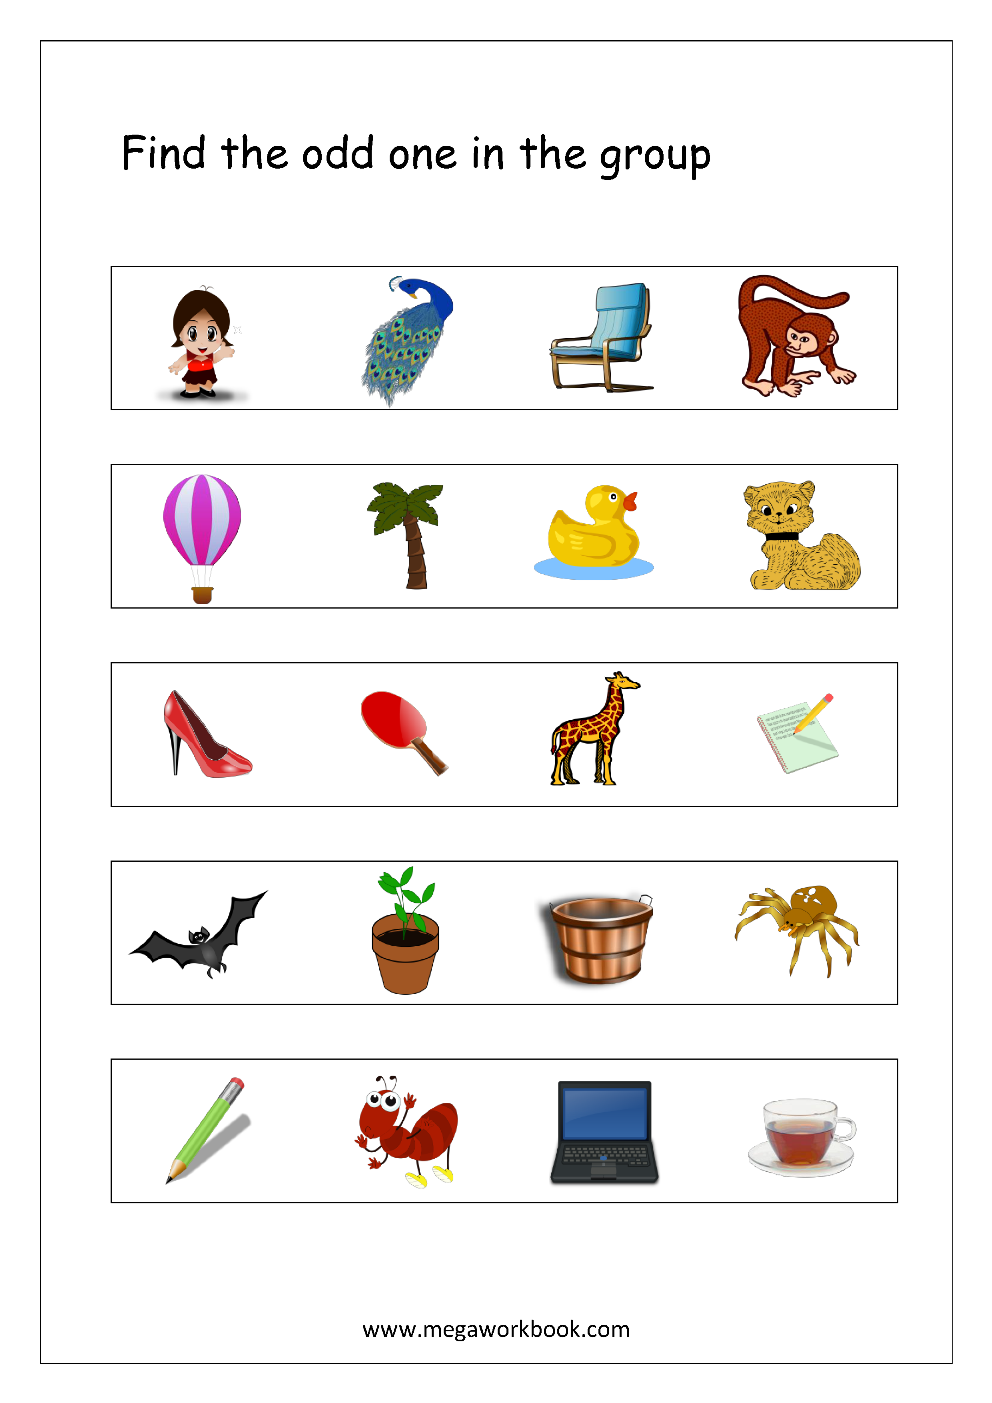 Free Printable Odd One Out Worksheets Logical Thinking Aptitude Worksheets For Kindergarten Preschool Megaworkbook